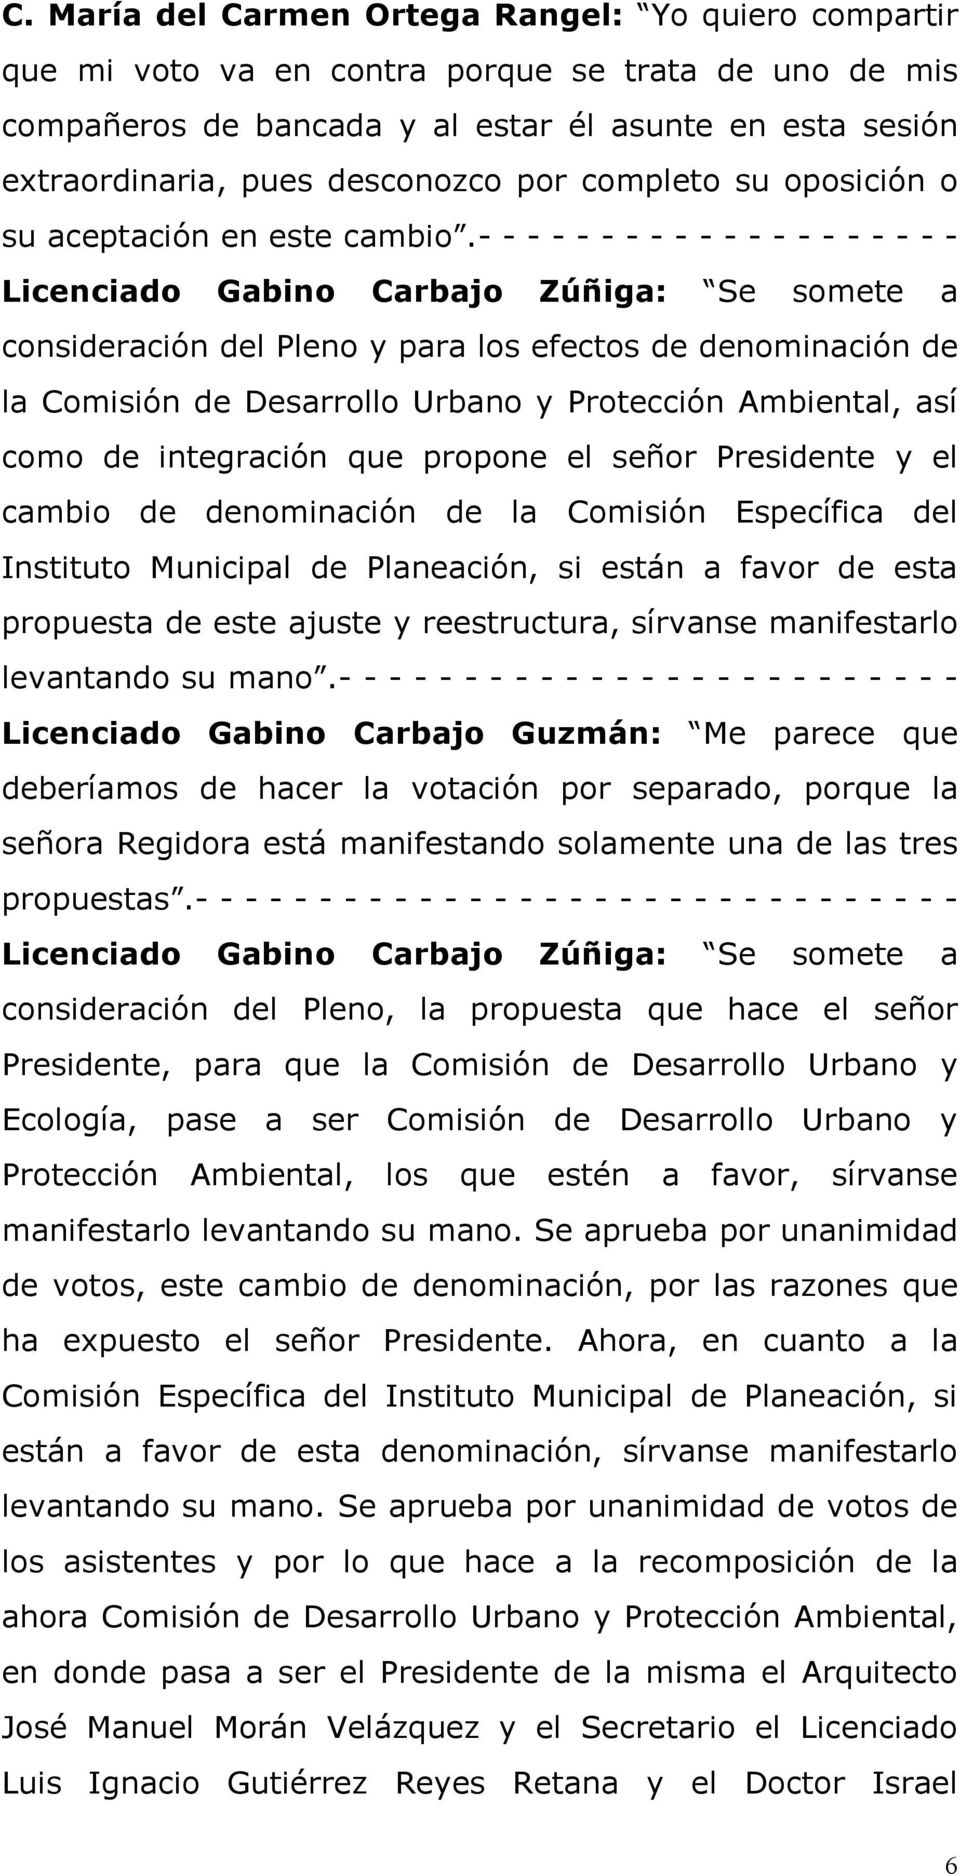 - - - - - - - - - - - - - - - - - - - - Licenciado Gabino Carbajo Zúñiga: Se somete a consideración del Pleno y para los efectos de denominación de la Comisión de Desarrollo Urbano y Protección